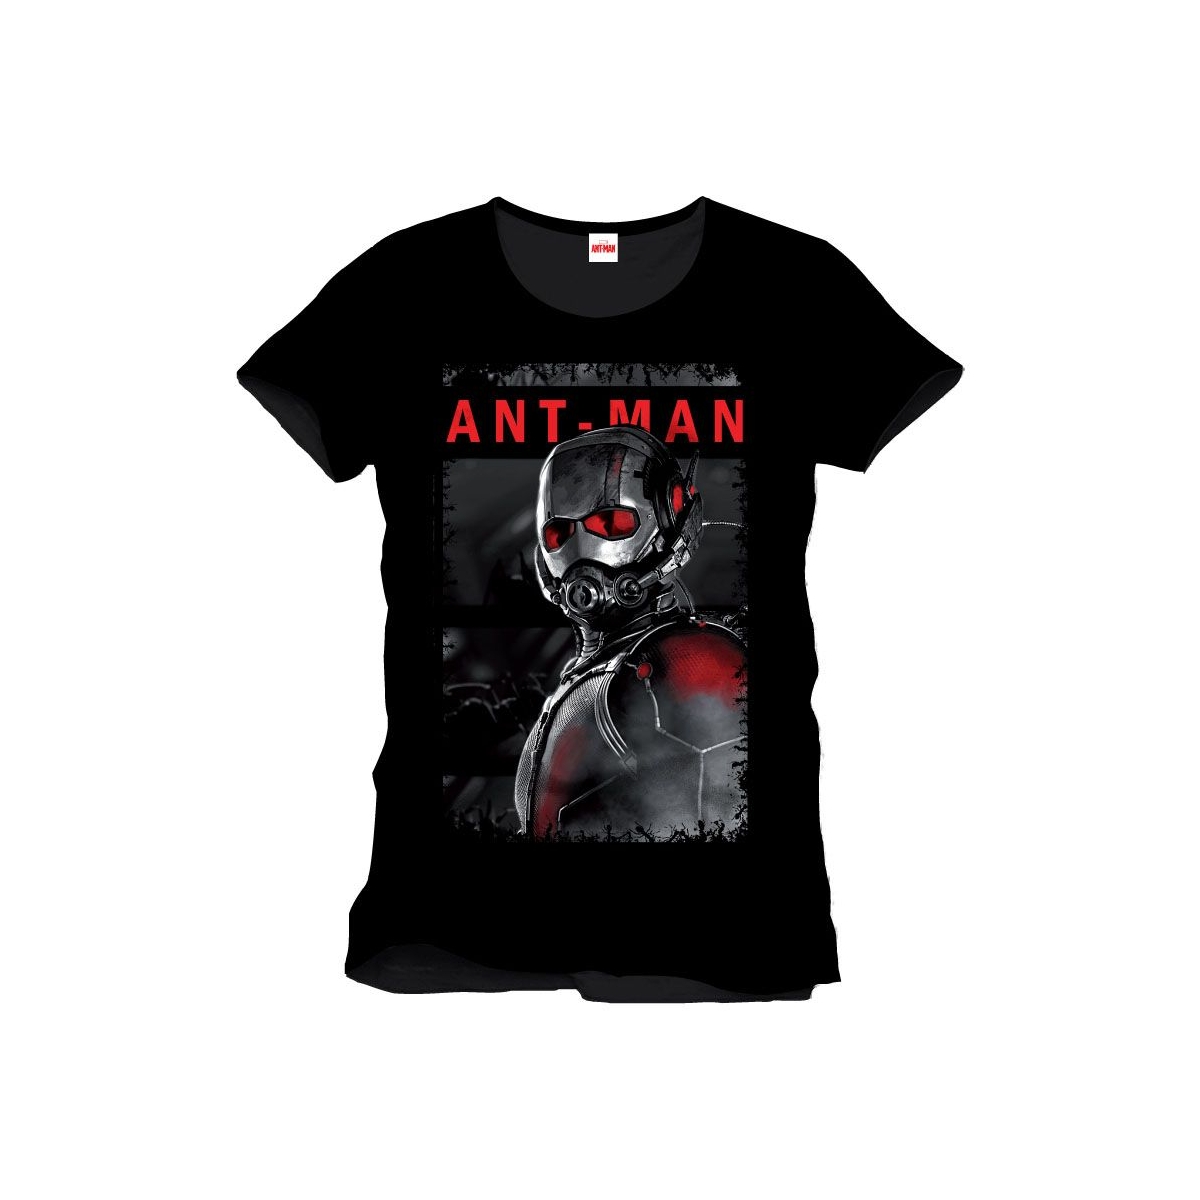 Ant-Man T-shirt